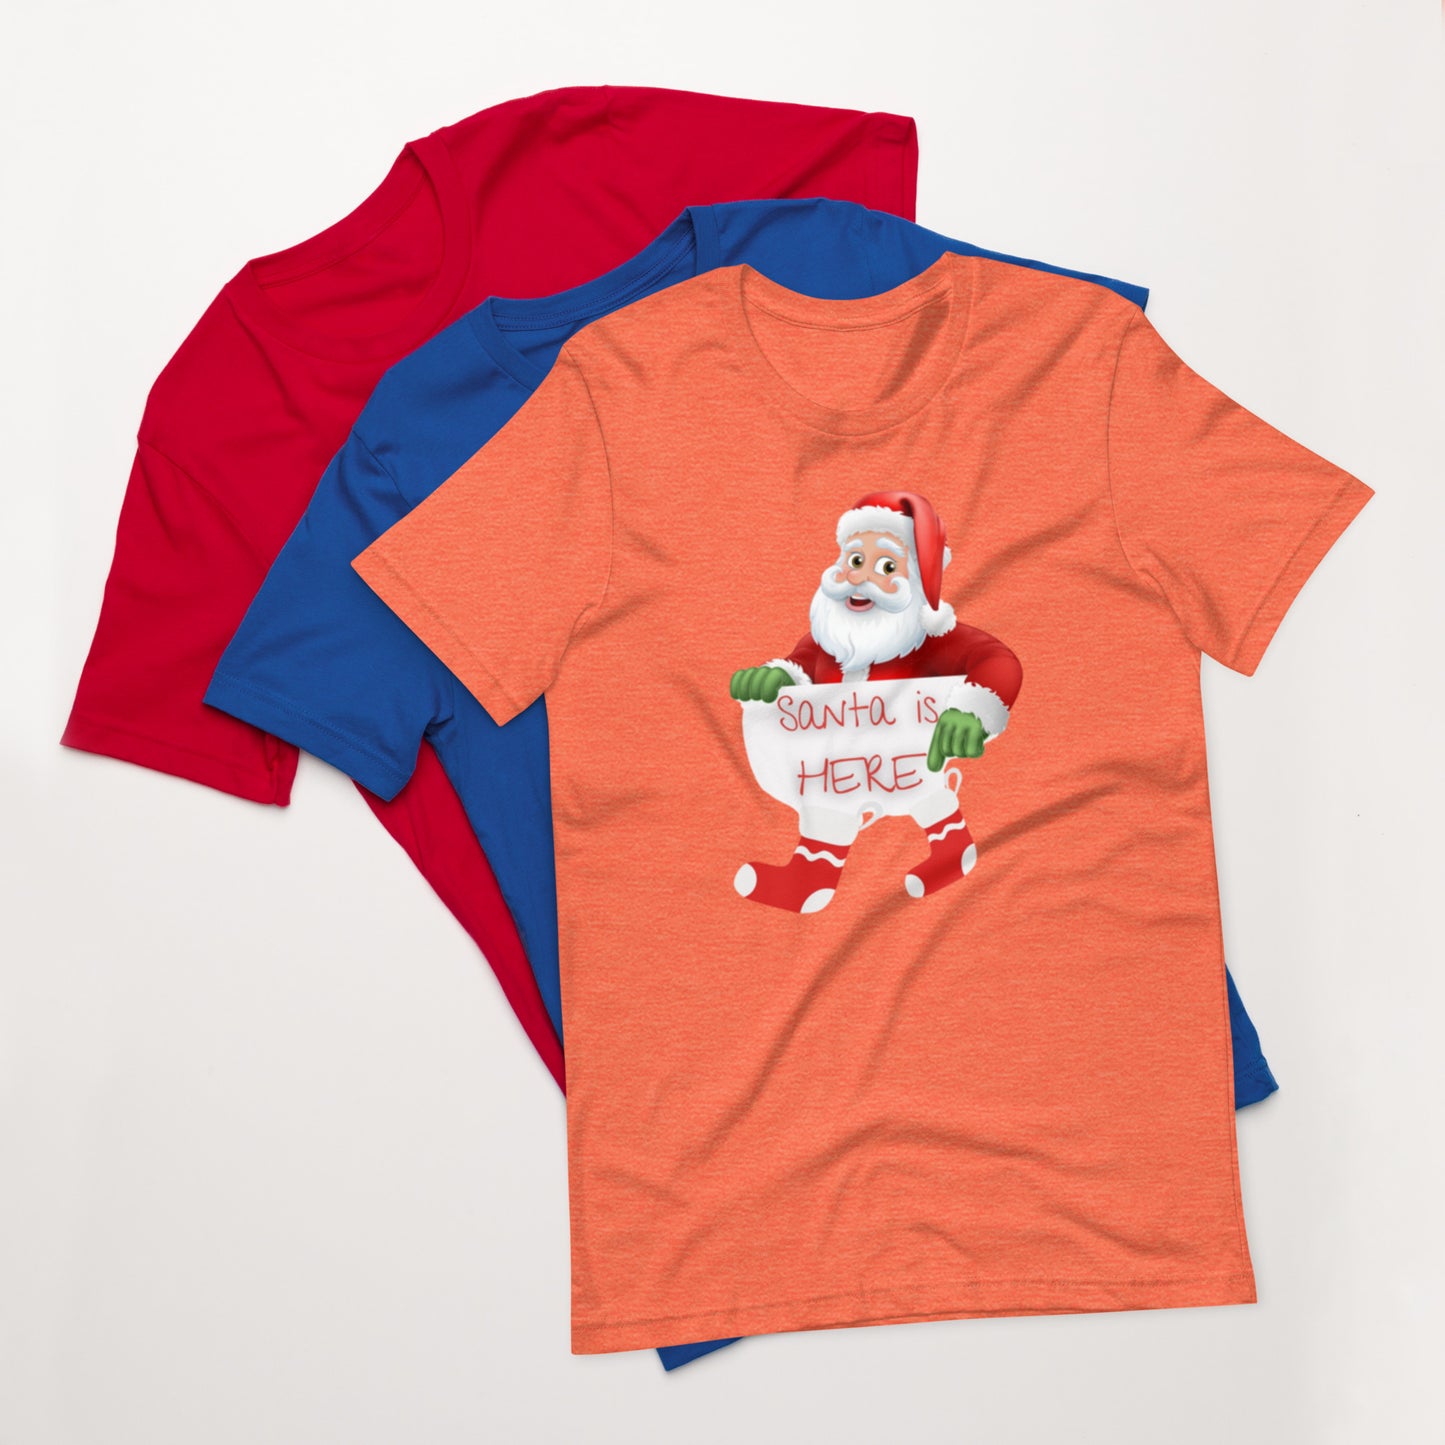 Santa Here Unisex t-shirt